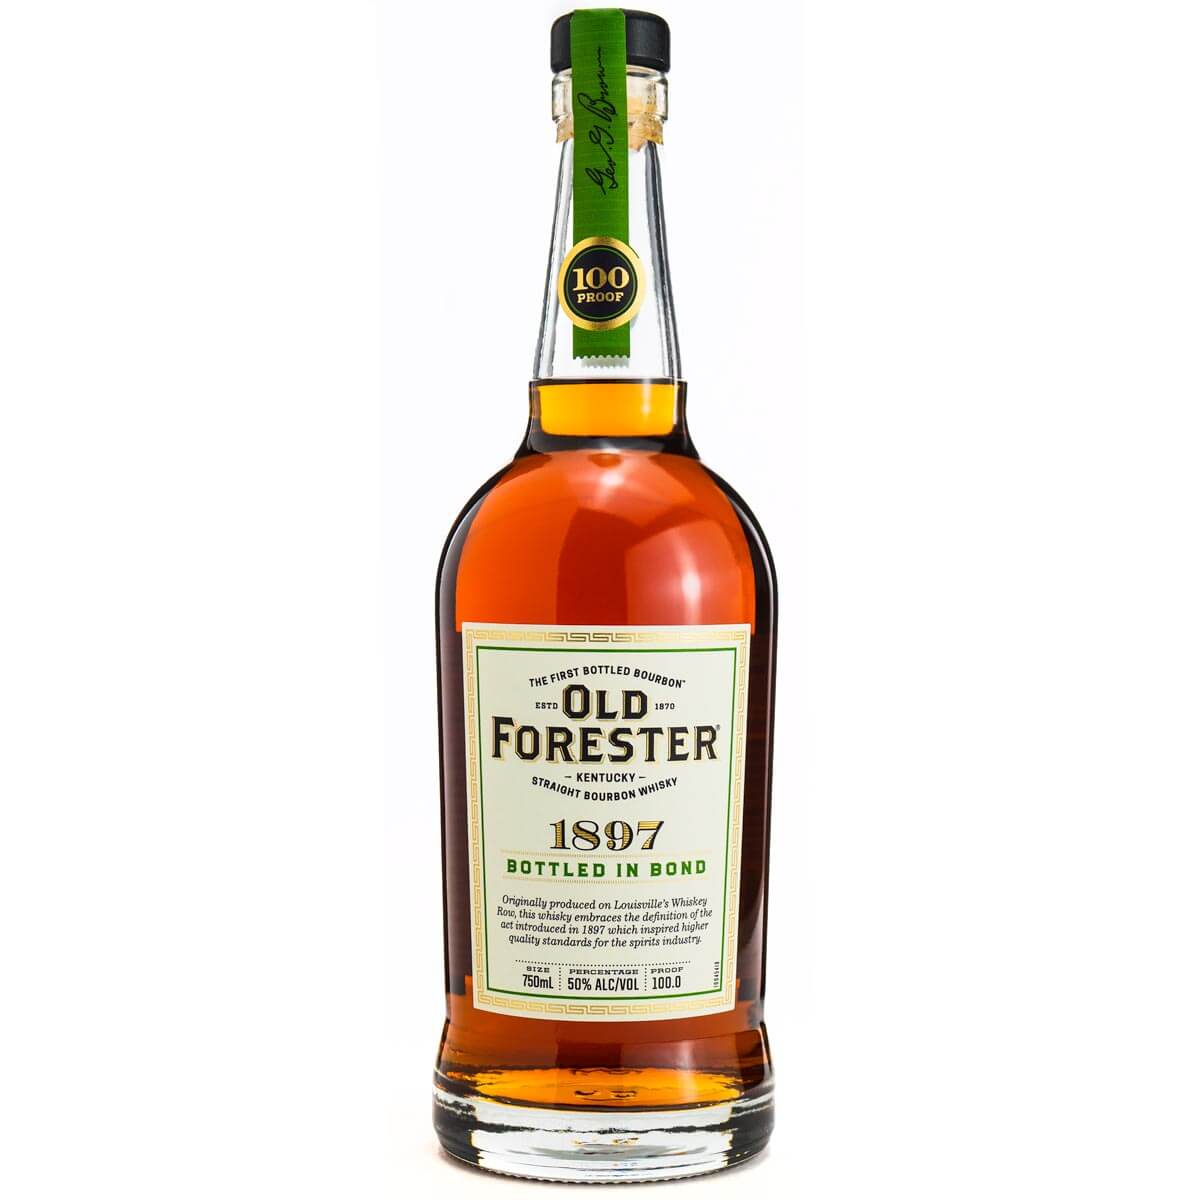 Old Forester 1897 Bottled in Bond bourbon